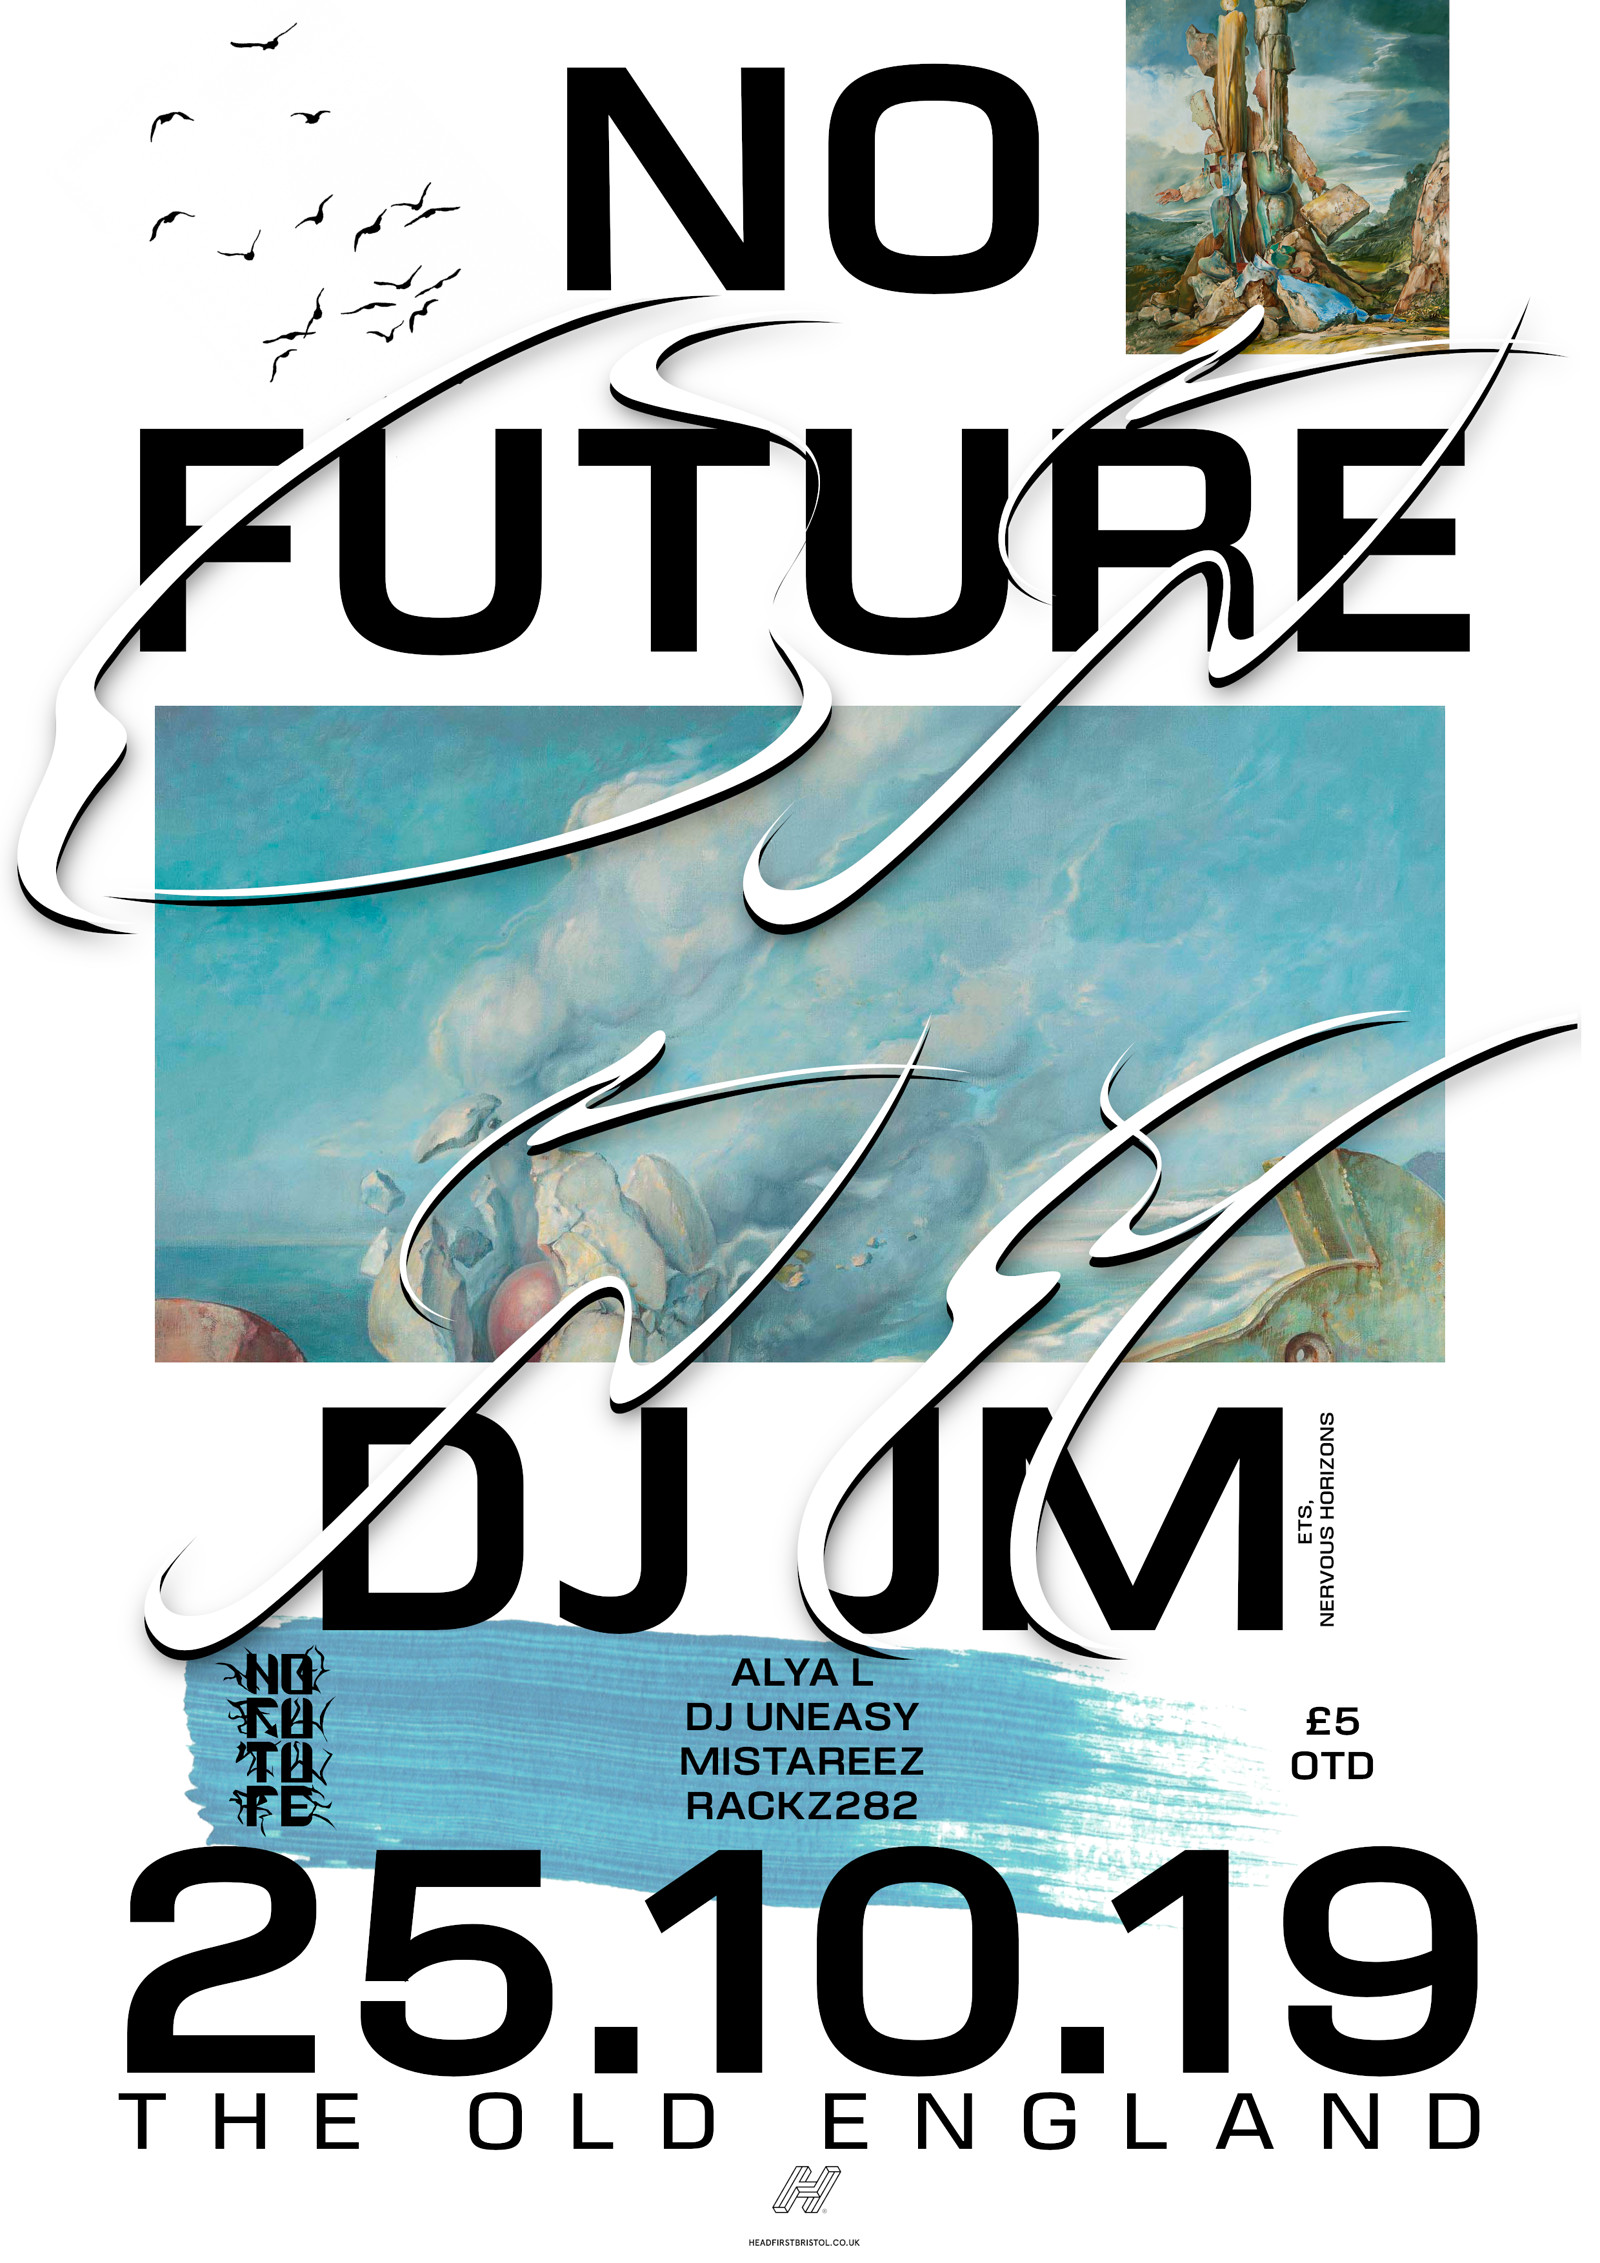 No Future: DJ JM at The Old England Pub